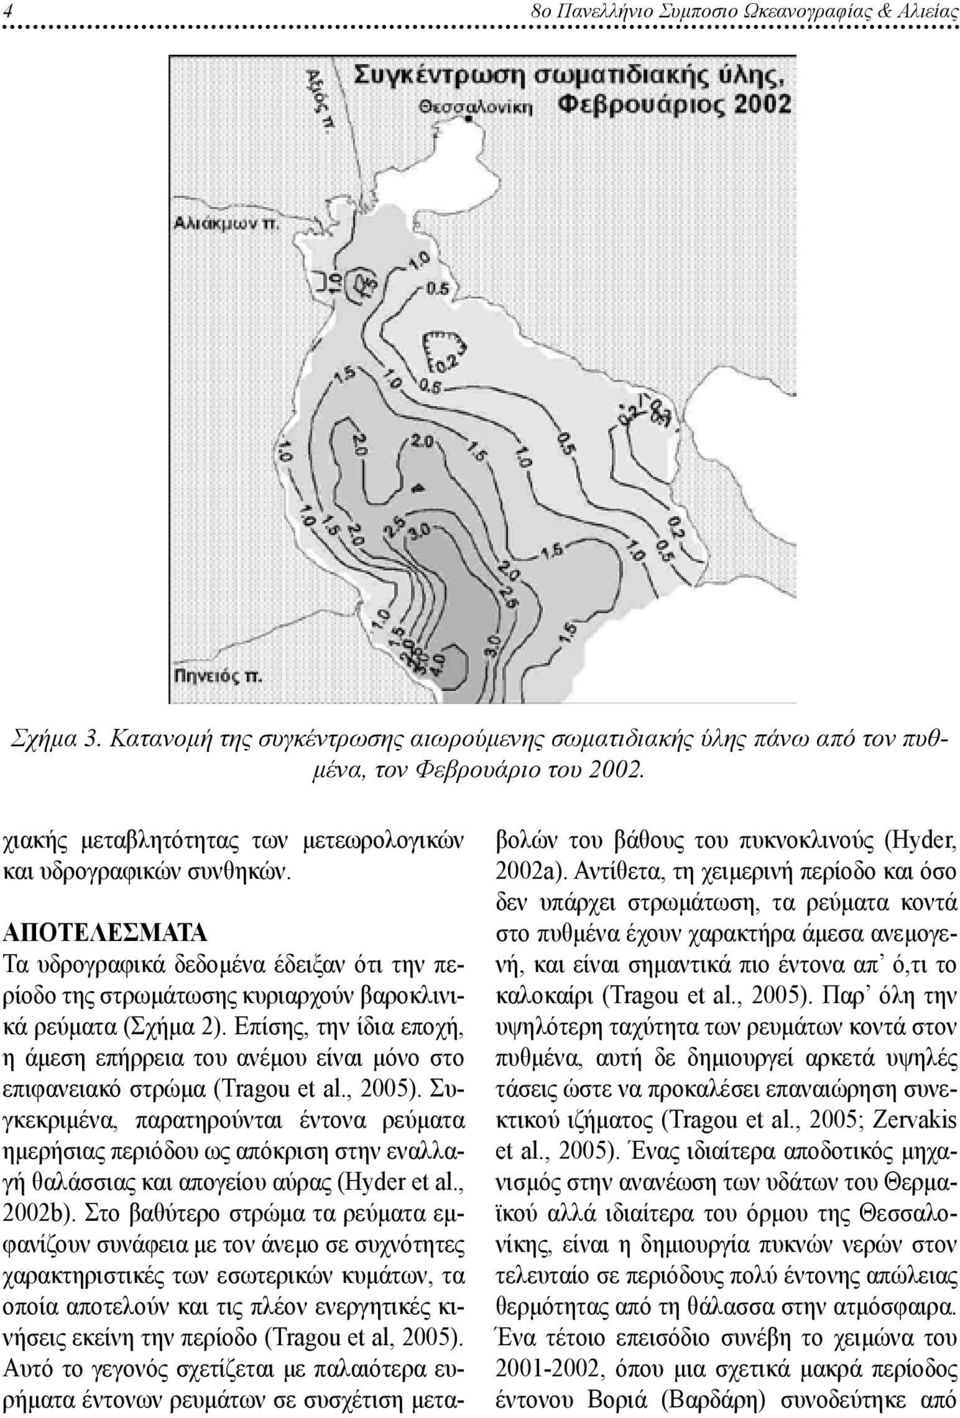 Επίσης, την ίδια εποχή, η άμεση επήρρεια του ανέμου είναι μόνο στο επιφανειακό στρώμα (Tragou et al., 2005).